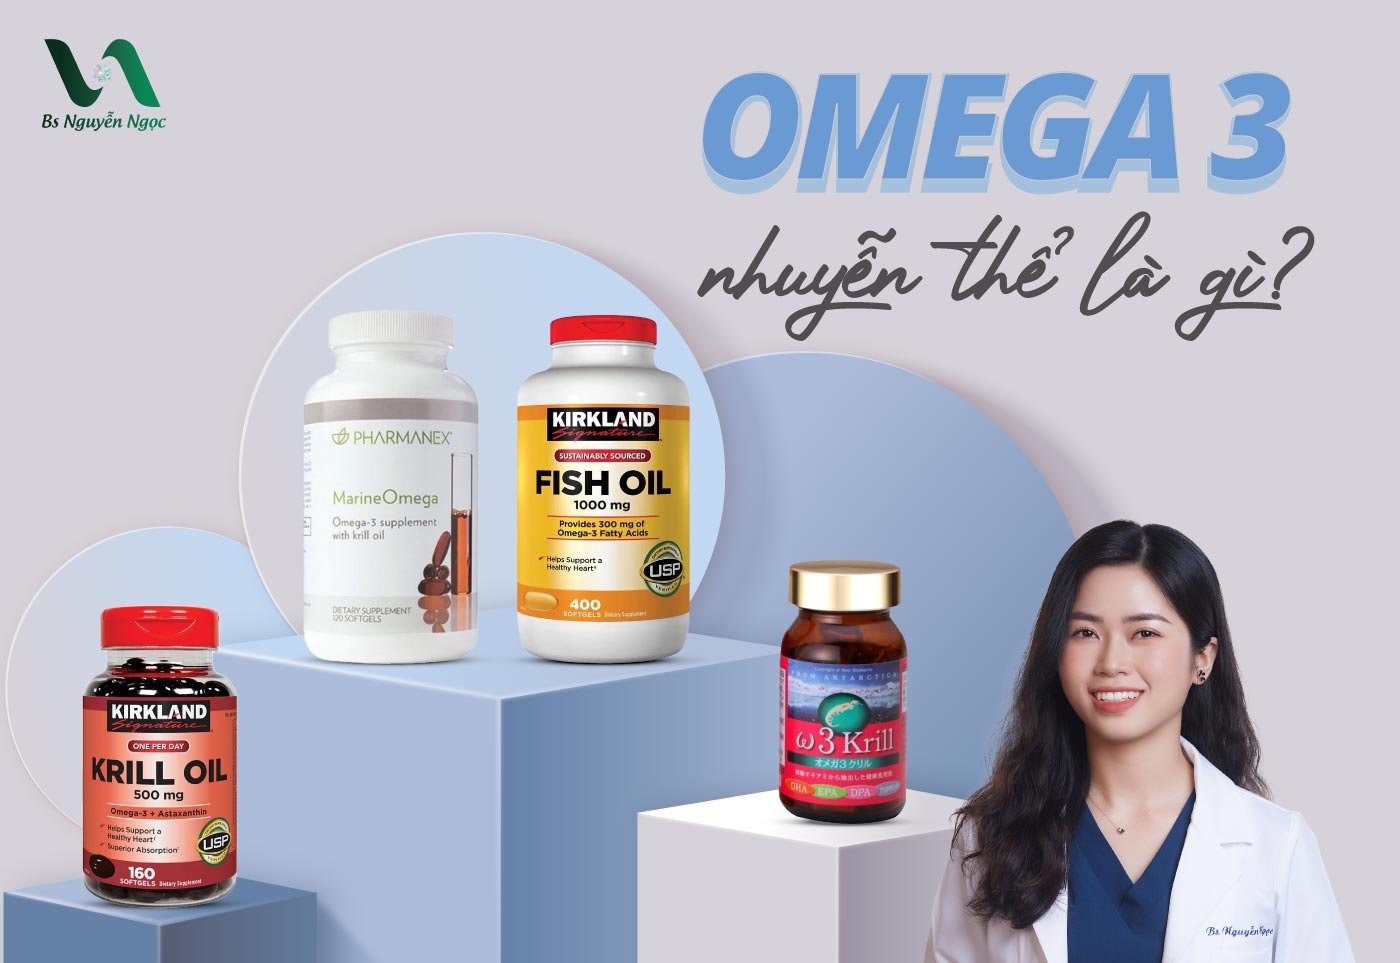 Omega 3 nhuyễn thể là gì?